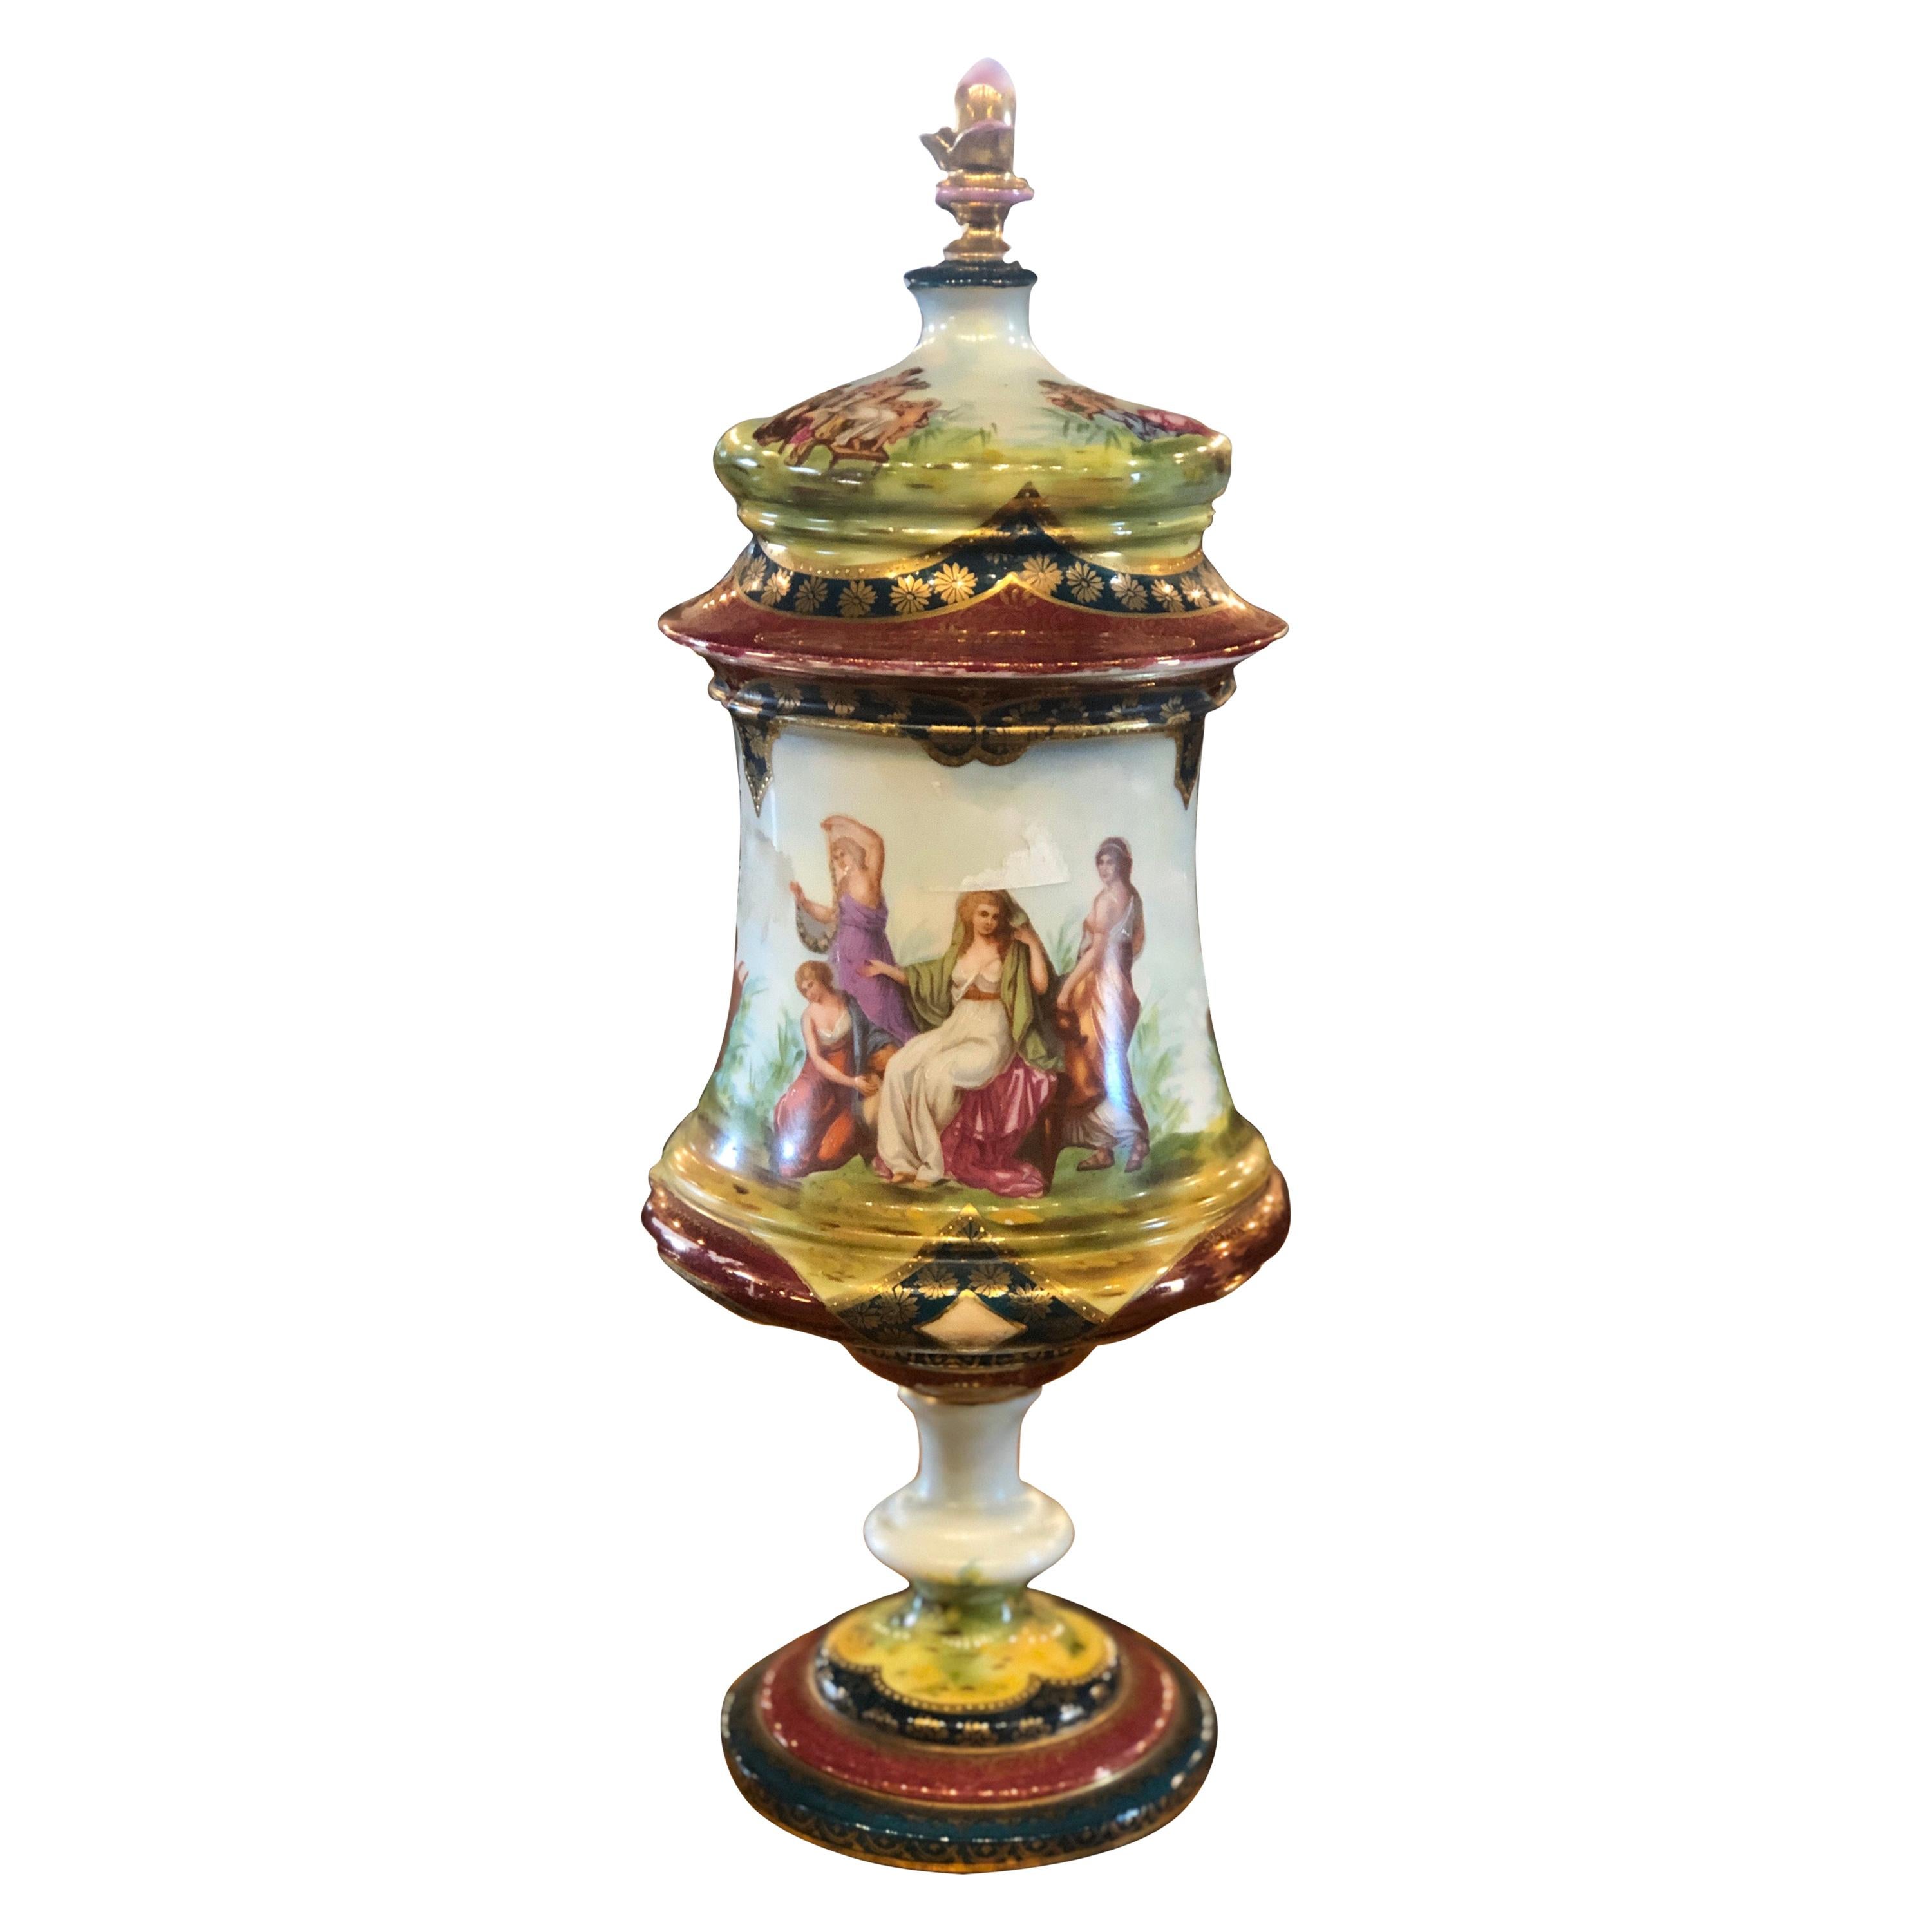 Vases en porcelaine Napoléon III du 19ème siècle, urne Royal Vienna peinte, années 1870